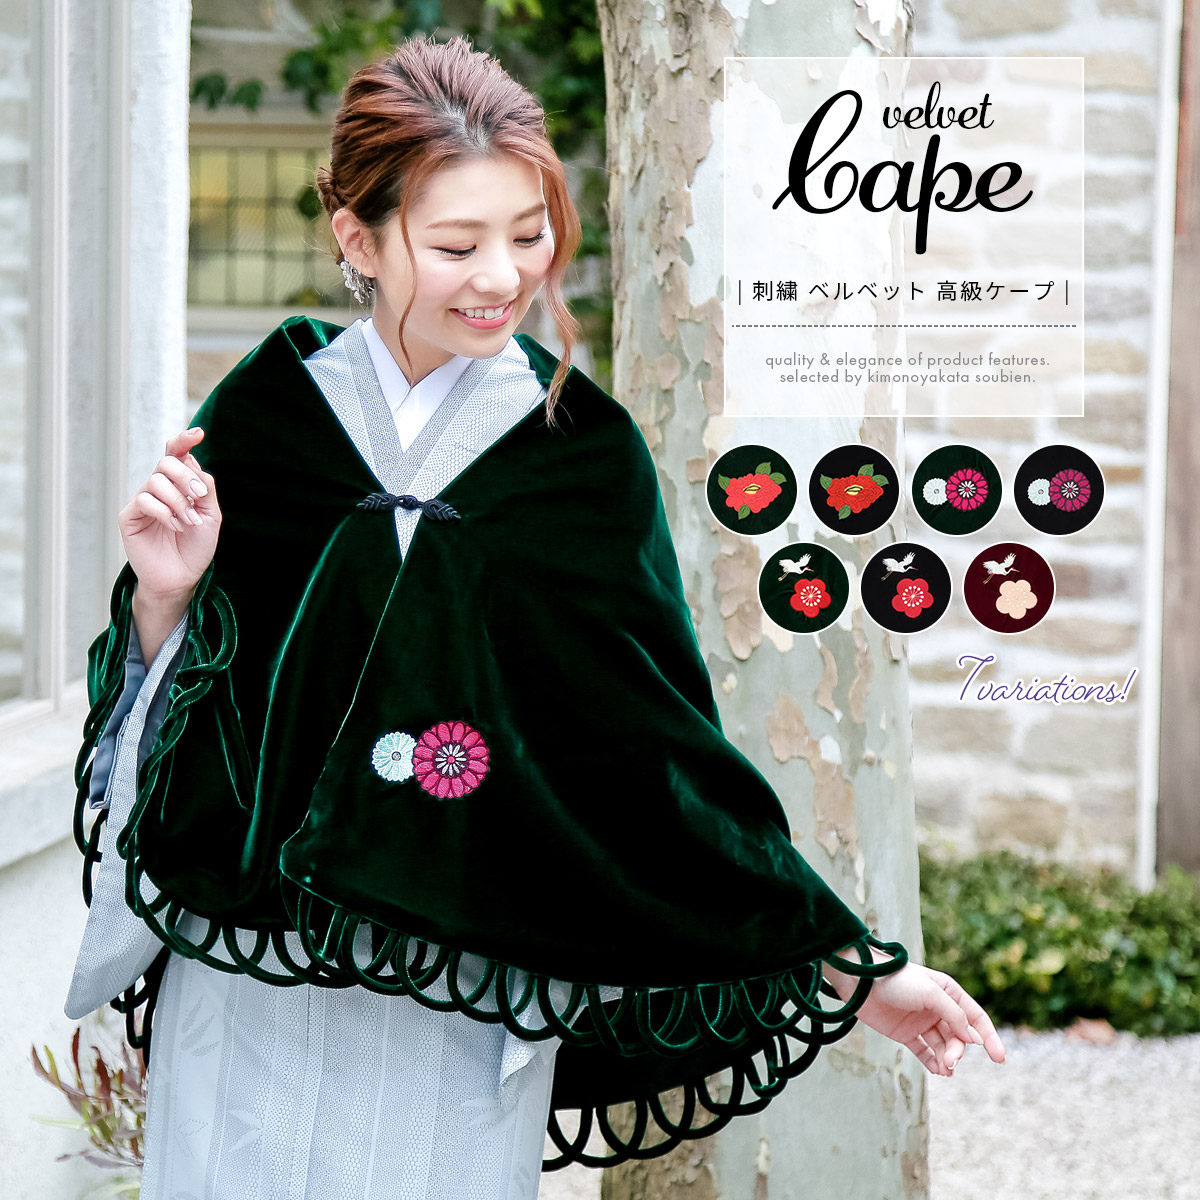 ケープコート ケープポンチョ 着物 アウター 刺繍 ベルベット 椿 菊 梅 鶴 緑 黒 赤 和装 日本製 女性 送料無料